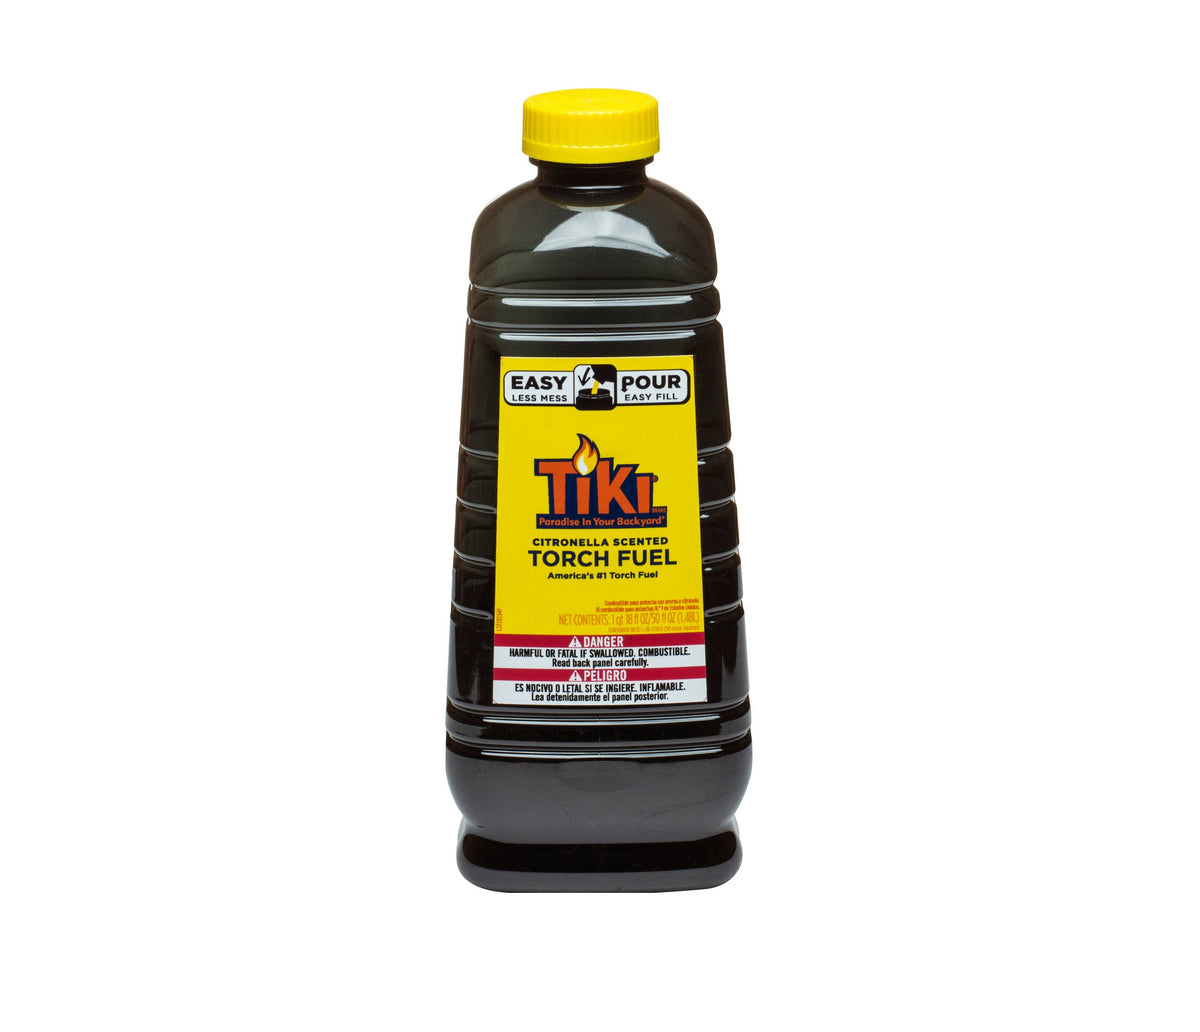 Tiki 1216154 Citronella Scented Torch Fuel, Yellow, 50 oz